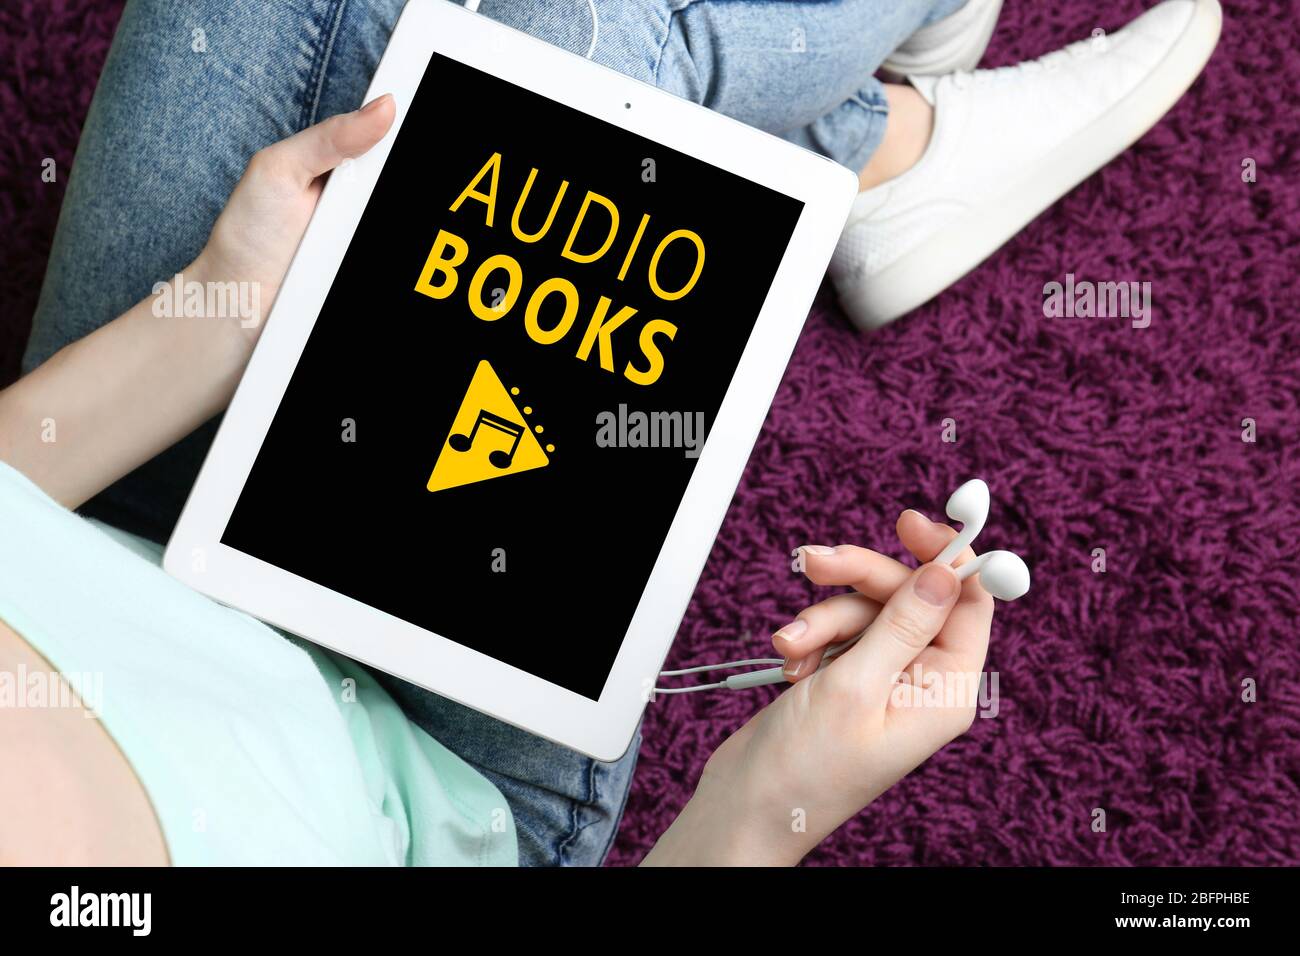 Concept de livres audio et de technologie moderne. Femme utilisant une tablette et des écouteurs, près de chez elle Banque D'Images